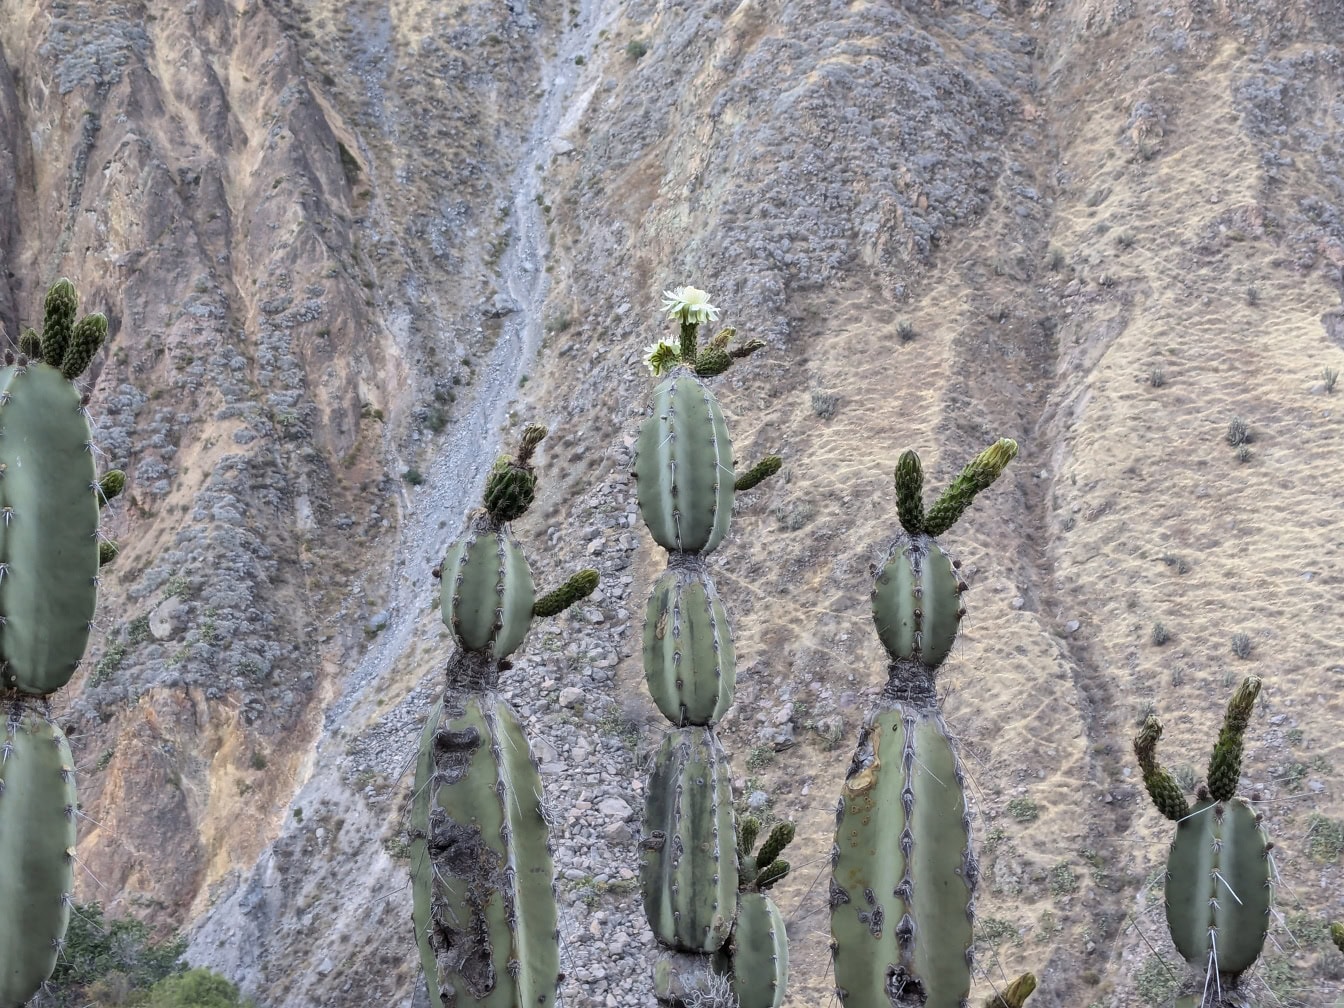 En kaktus med en hvid blomst, en urt kaldet mandacaru eller cardeiro (Cereus jamacaru)